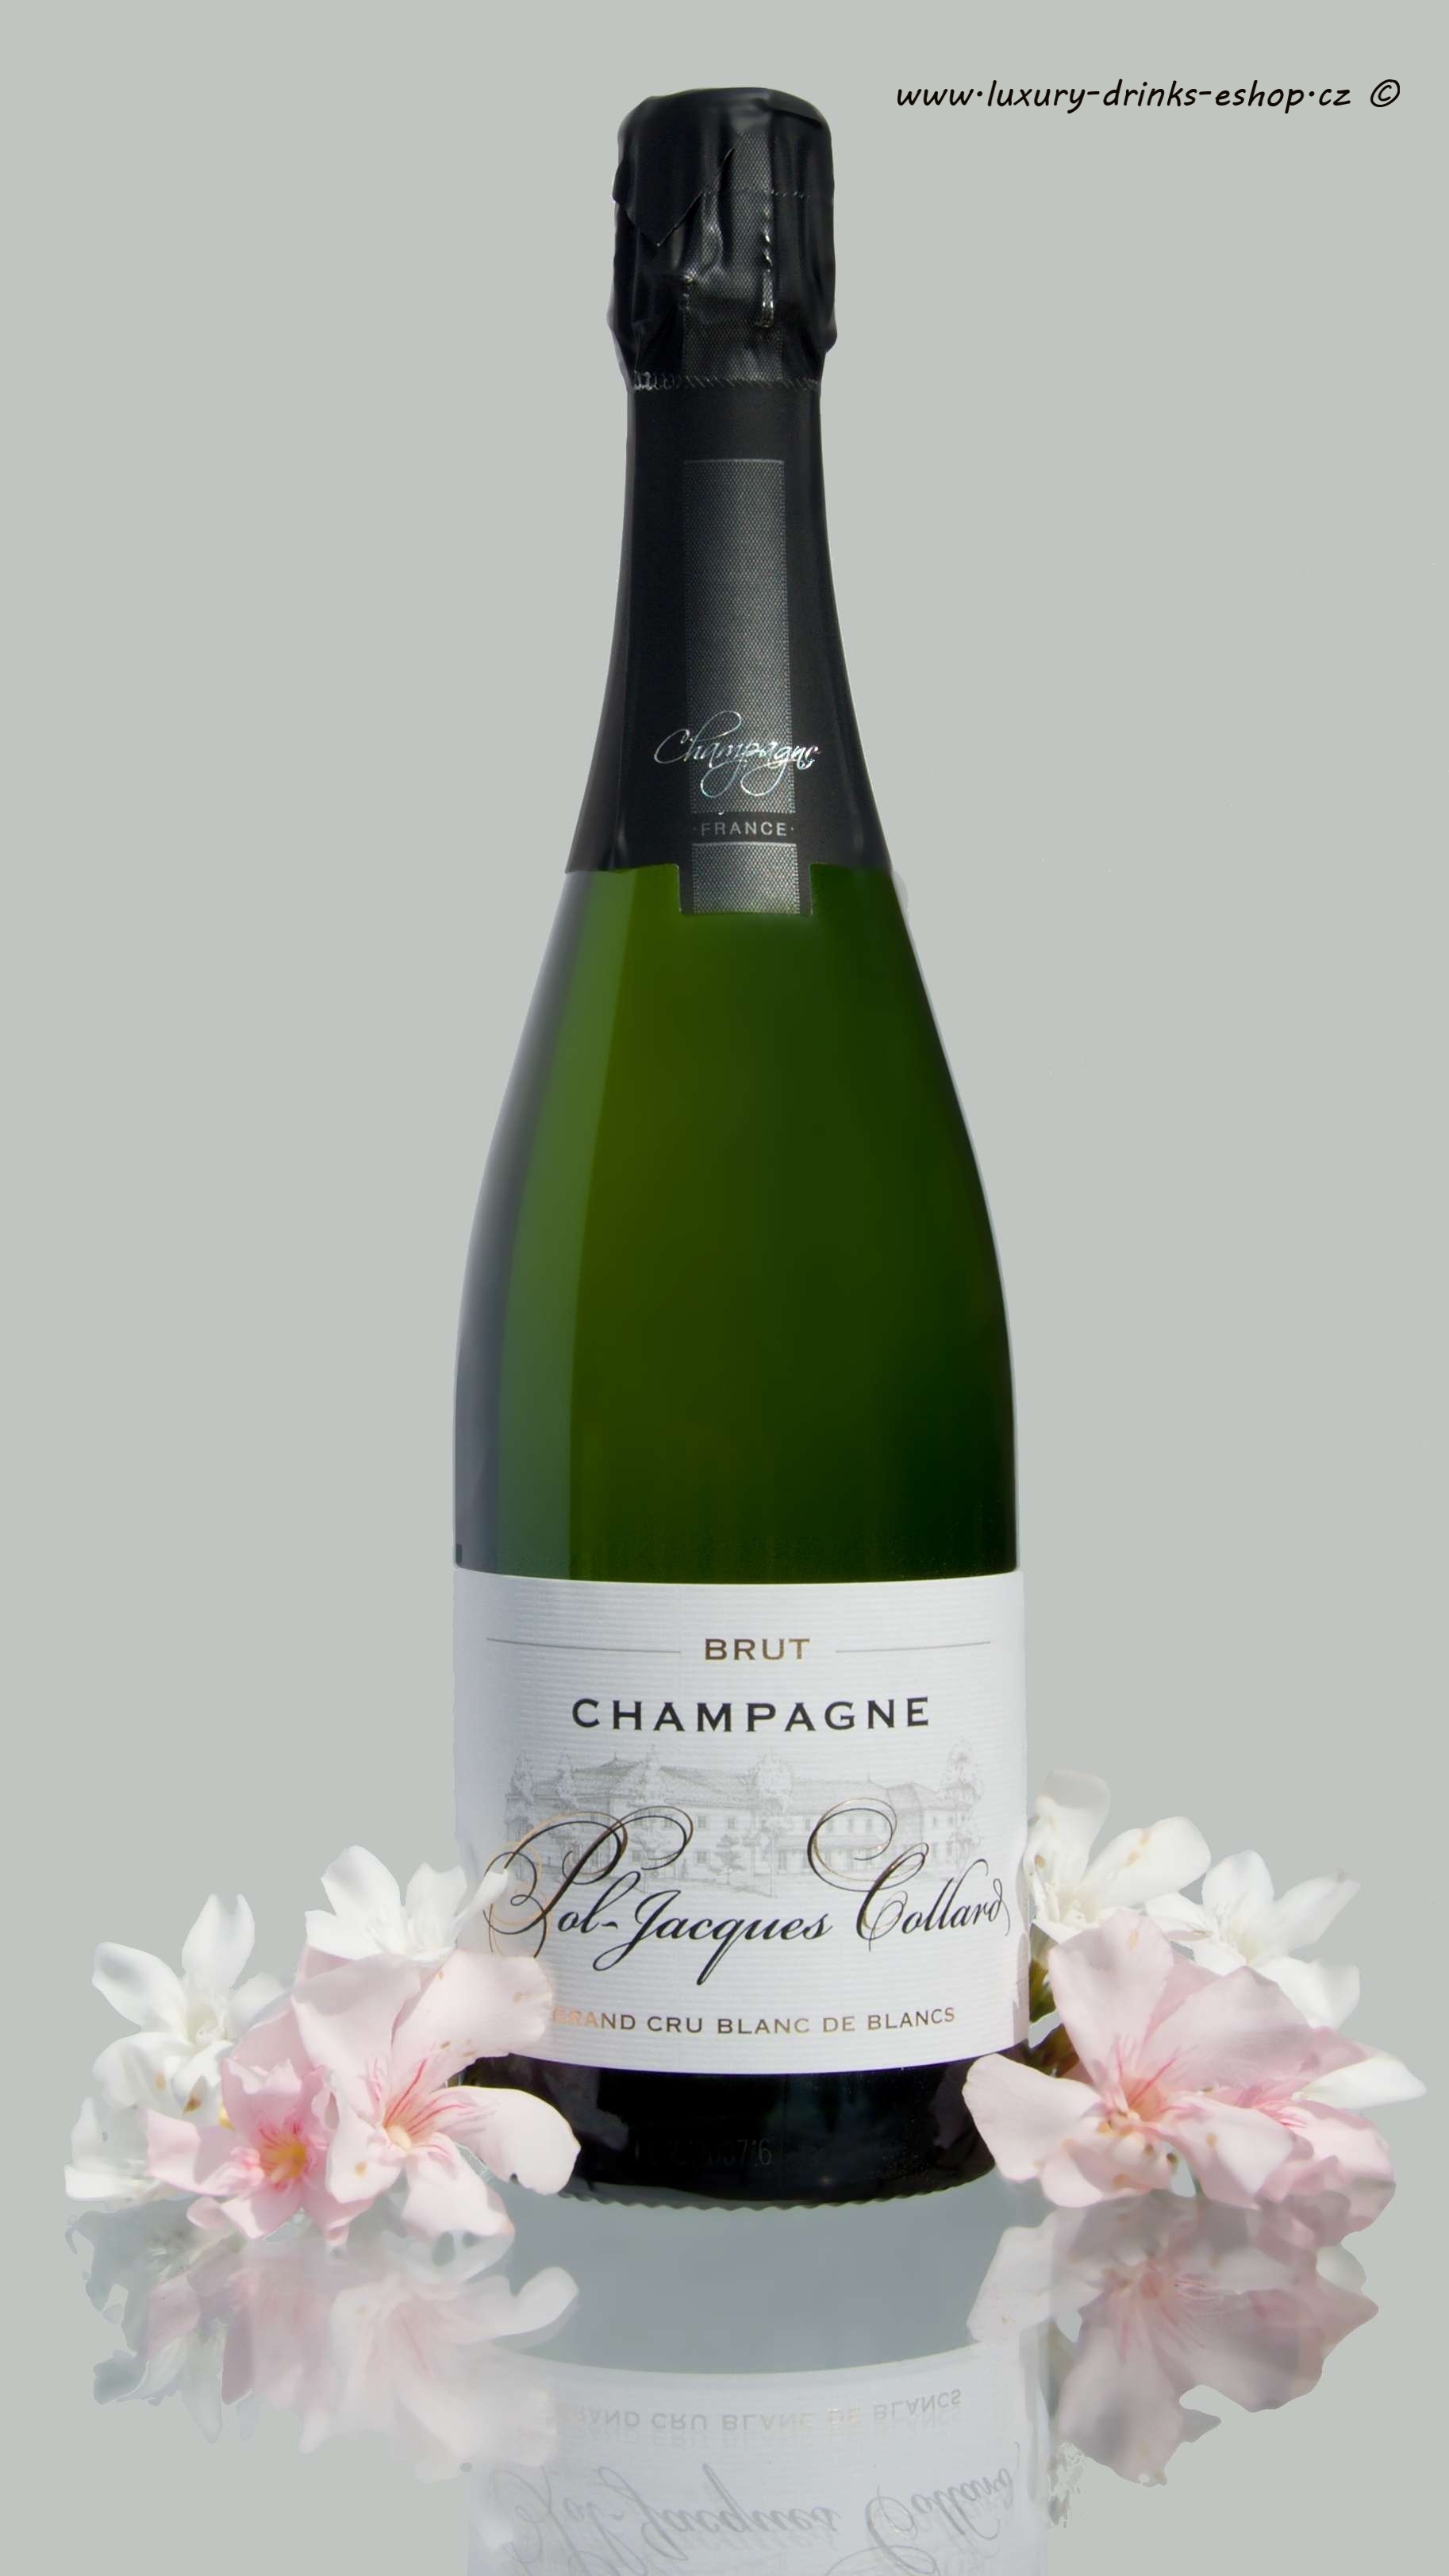 Champagne / šumivá vína